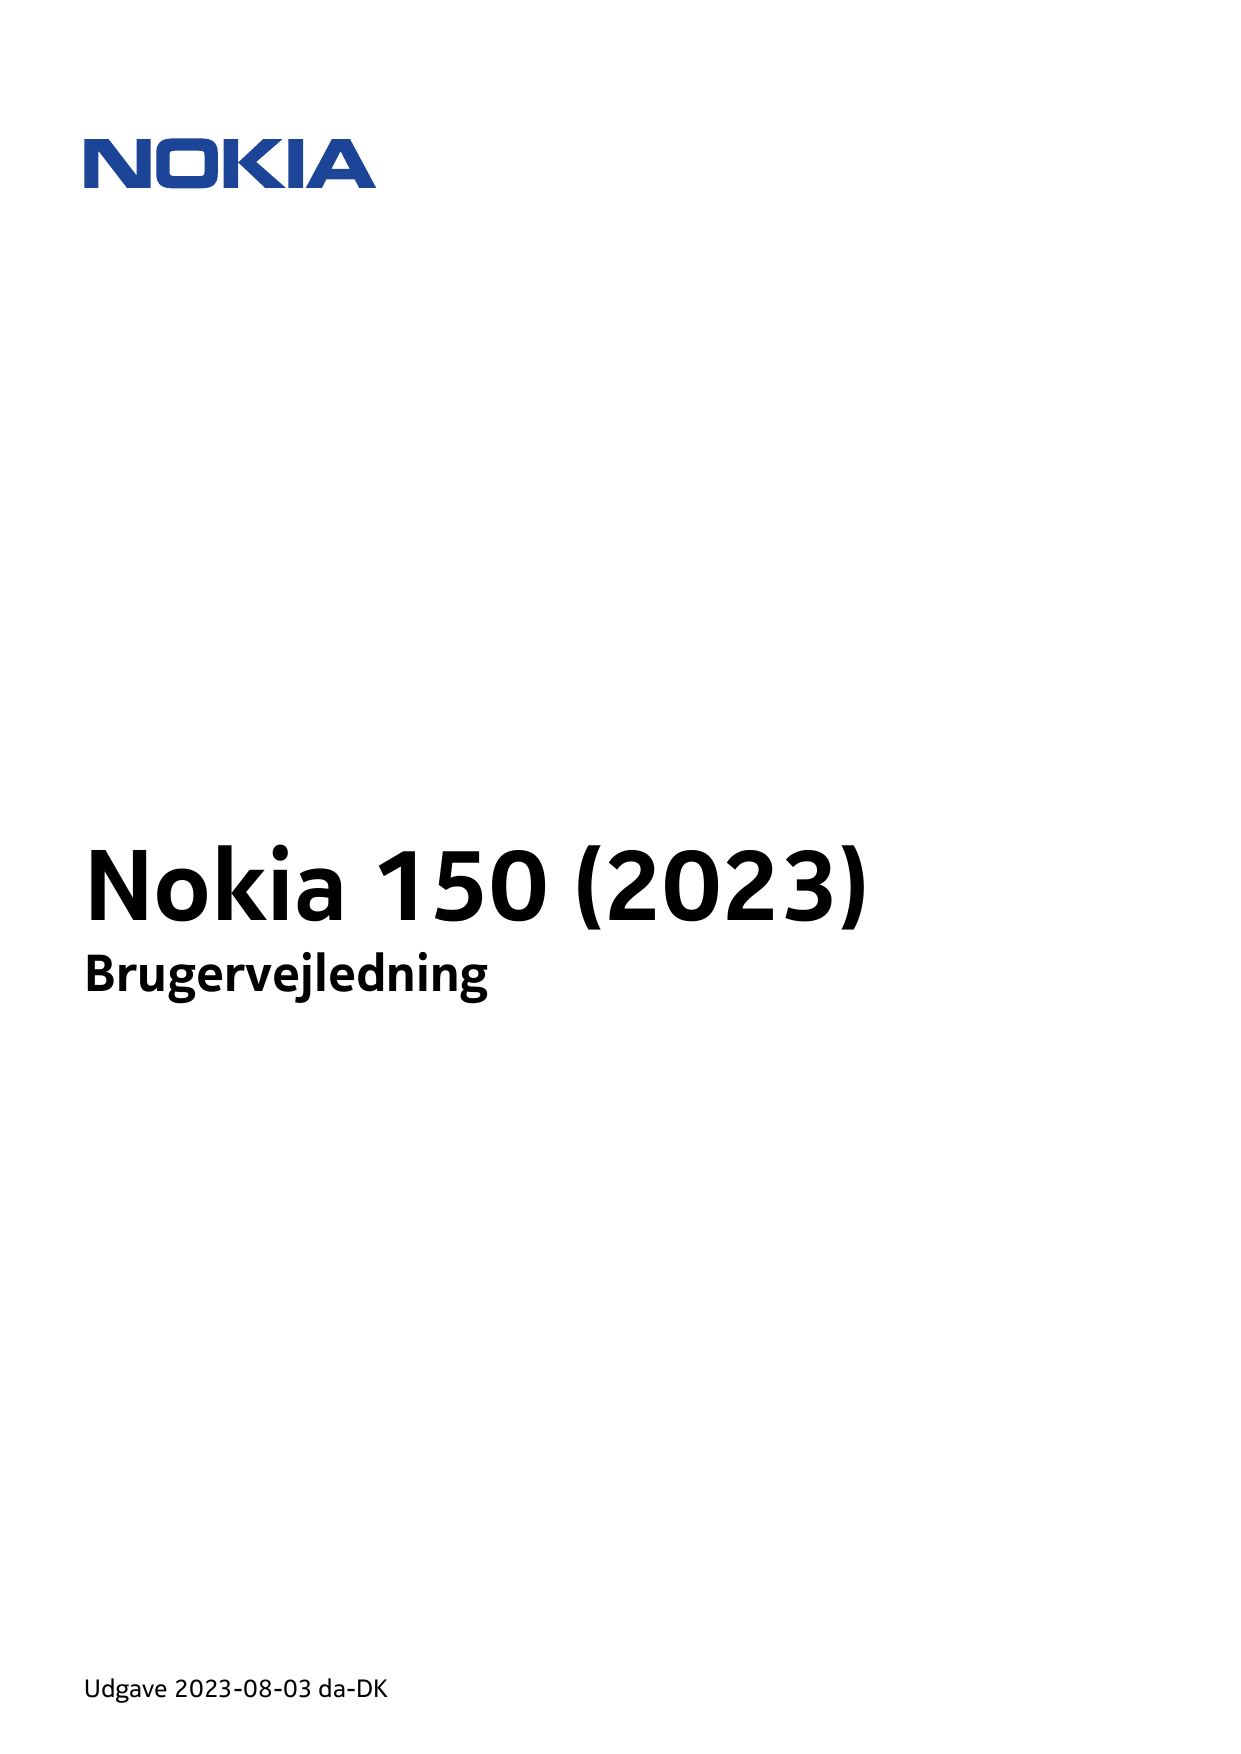 Nokia 150 (2023)BrugervejledningUdgave 2023-08-03 da-DK